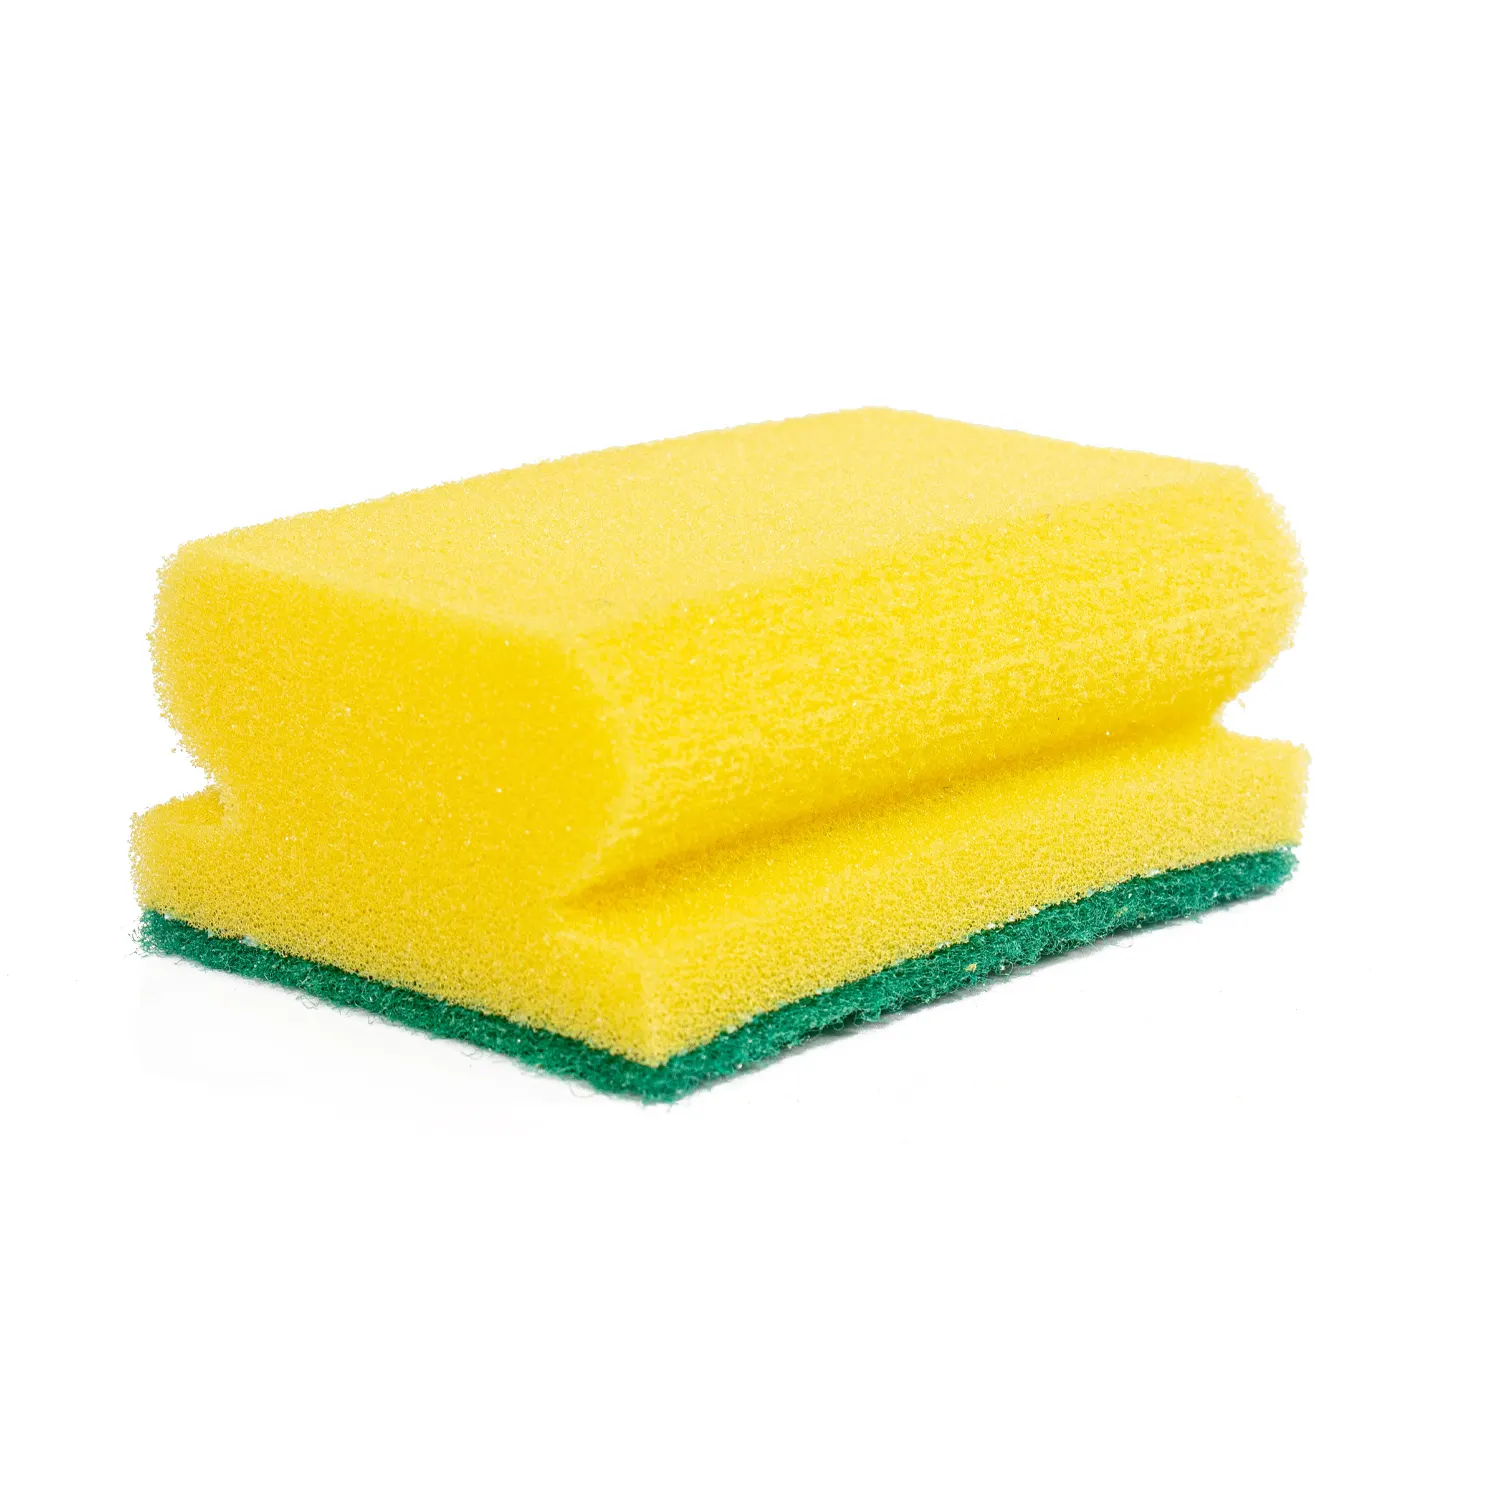 Dishwashing sponge kitchen supplies dishwashing sponge scouring pad household cleaning dishcloth rag high density sponge wipe